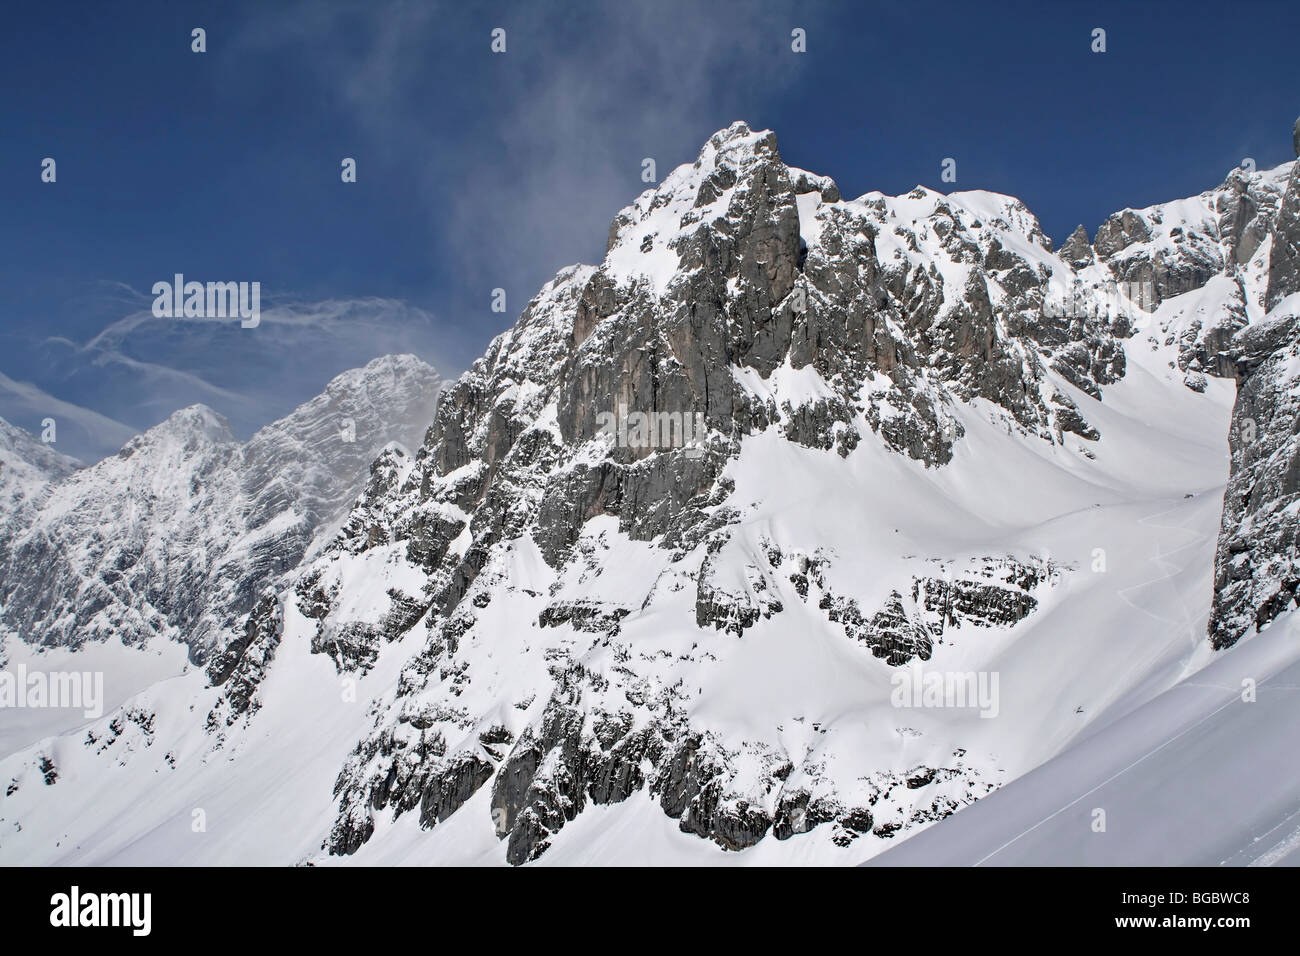 Montagnes enneigées avant une tempête, Dachstein, Ramsau, Autriche, Europe Banque D'Images